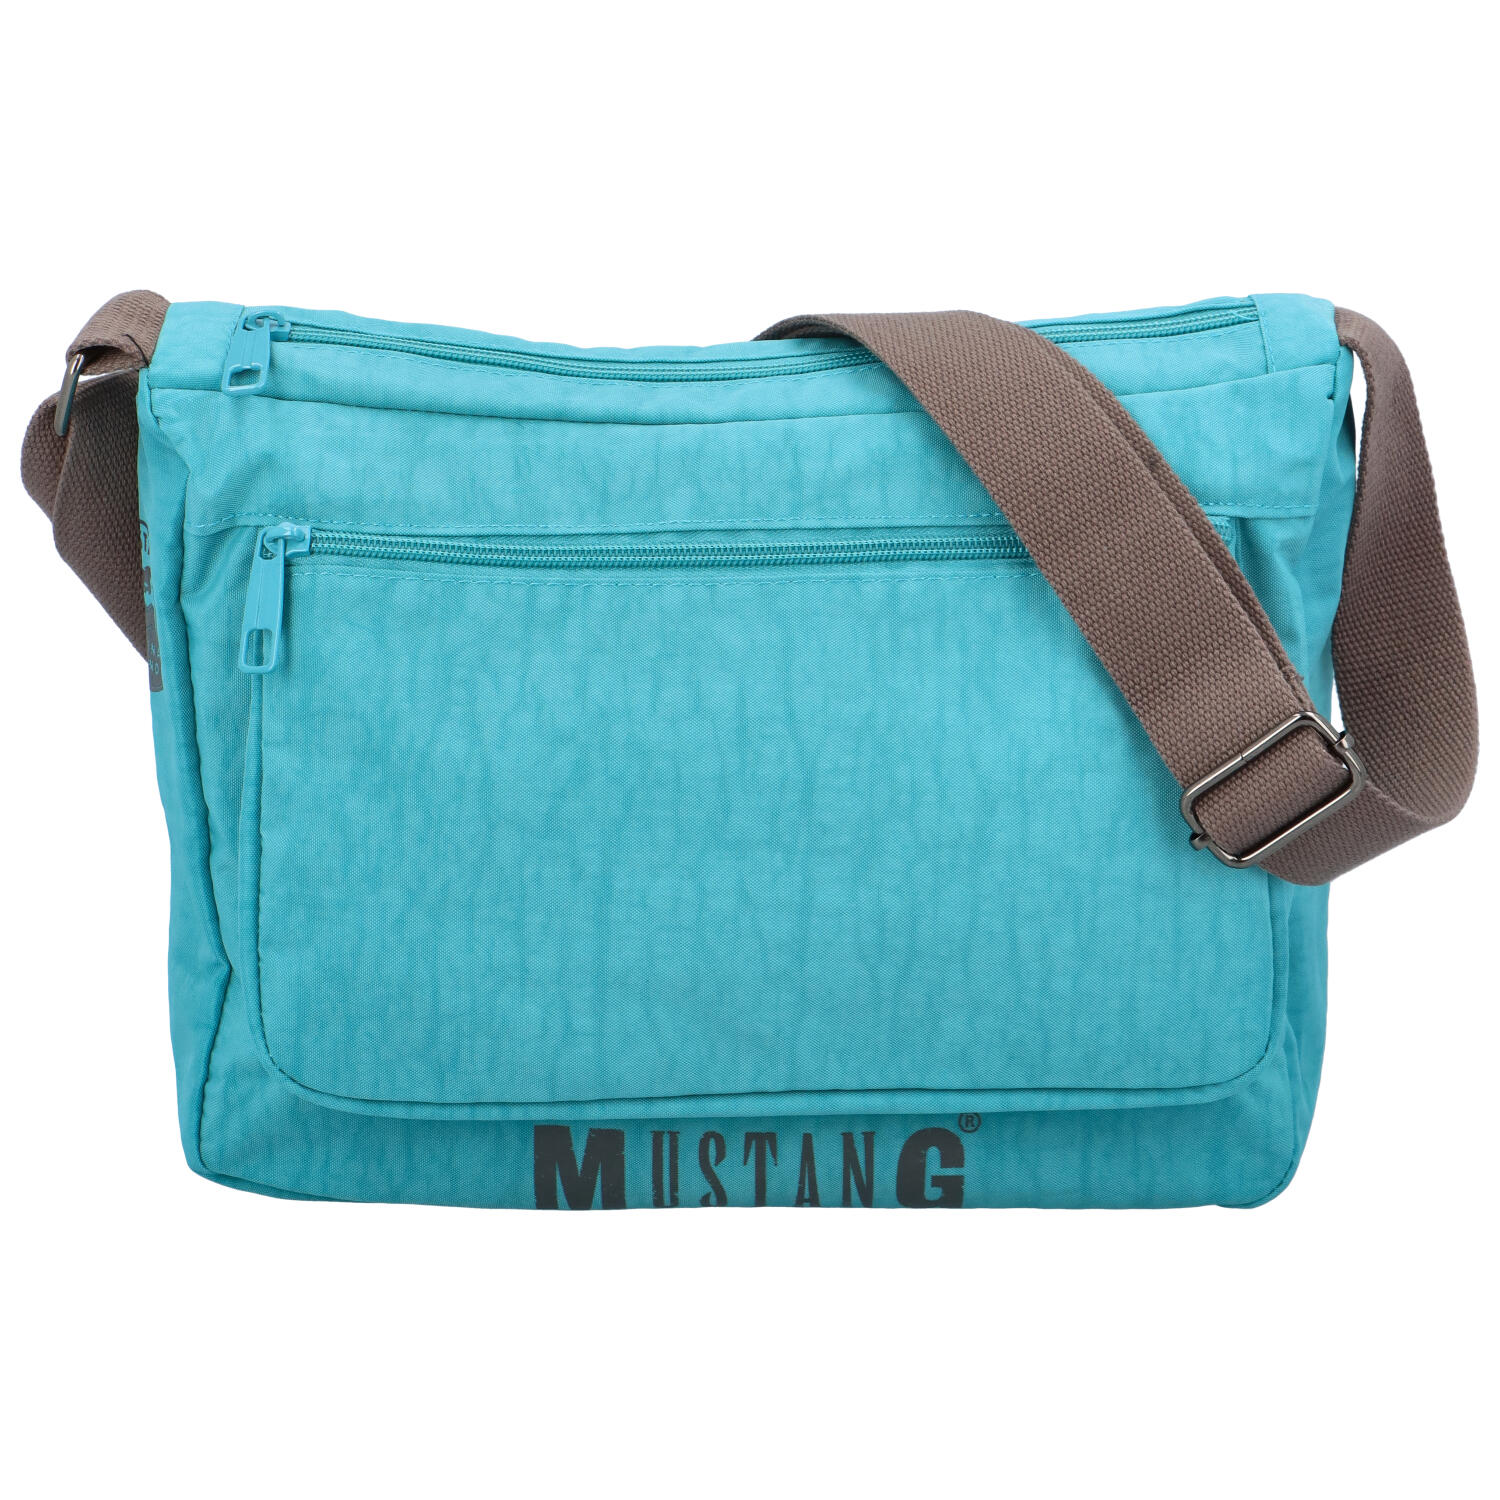 Športová taška cez rameno svetlo modrá - Mustang Agelesy